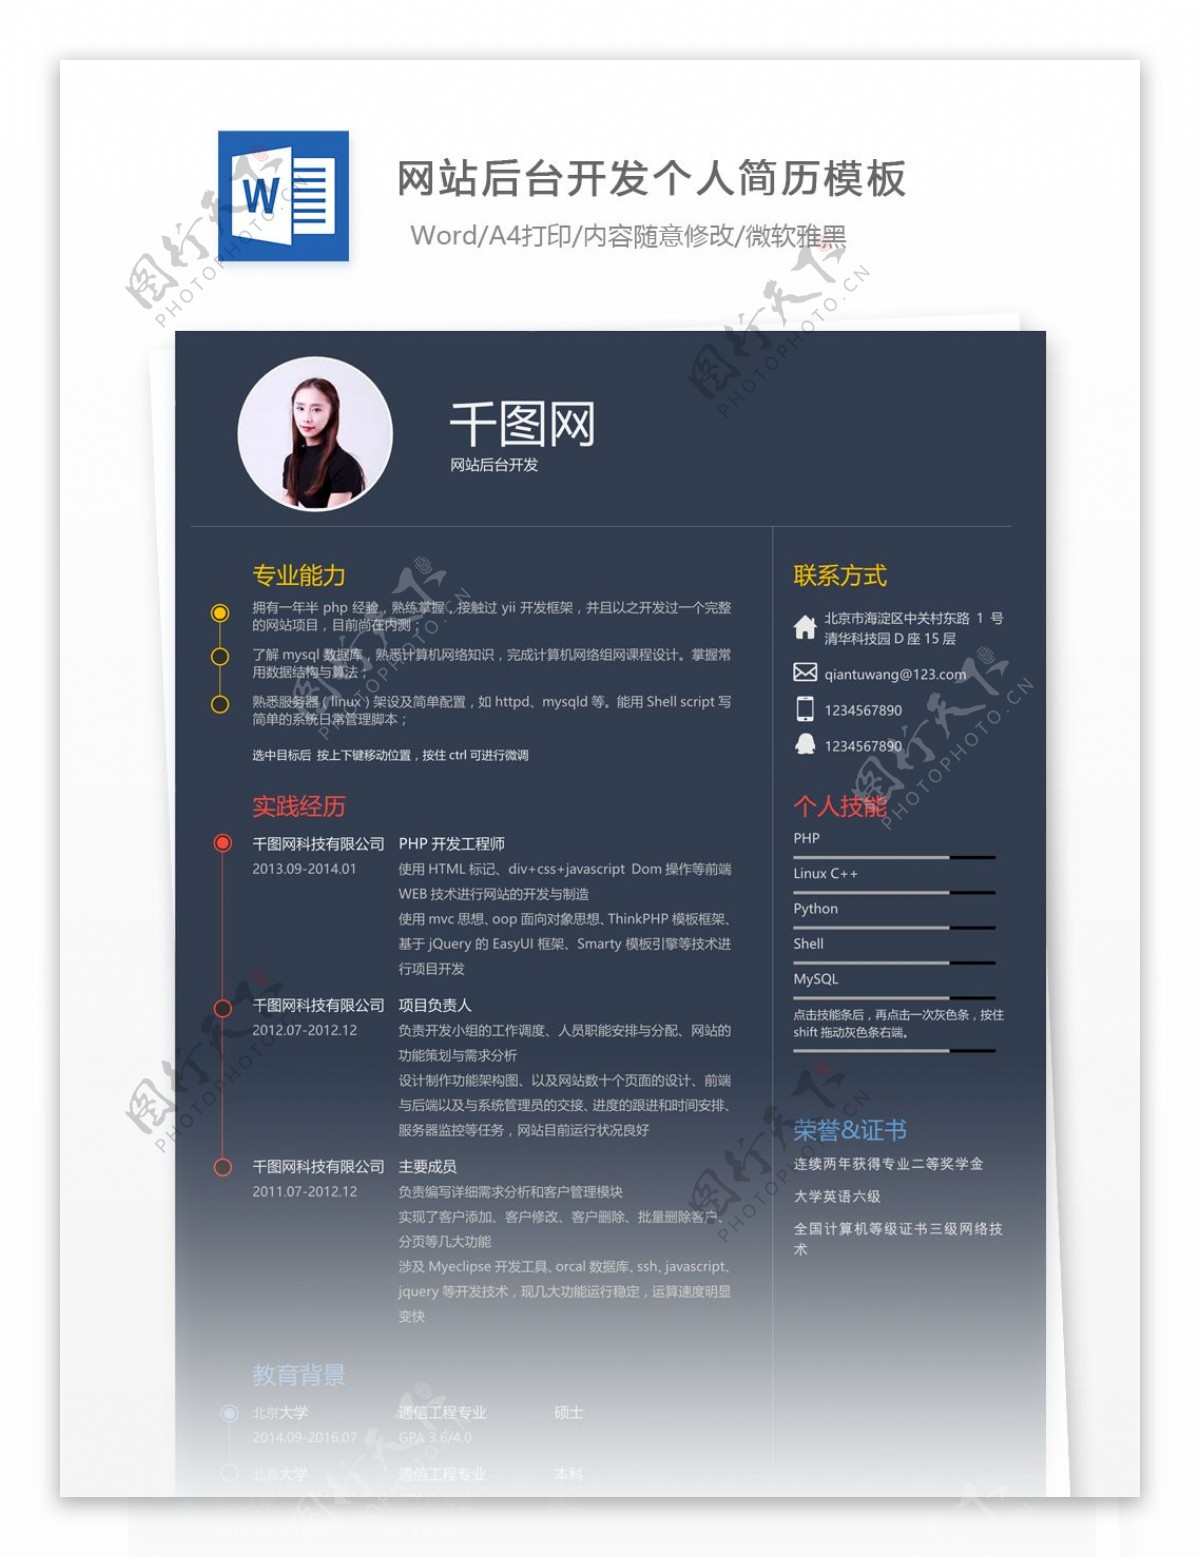 林雅惠网站后台开发个人简历模板